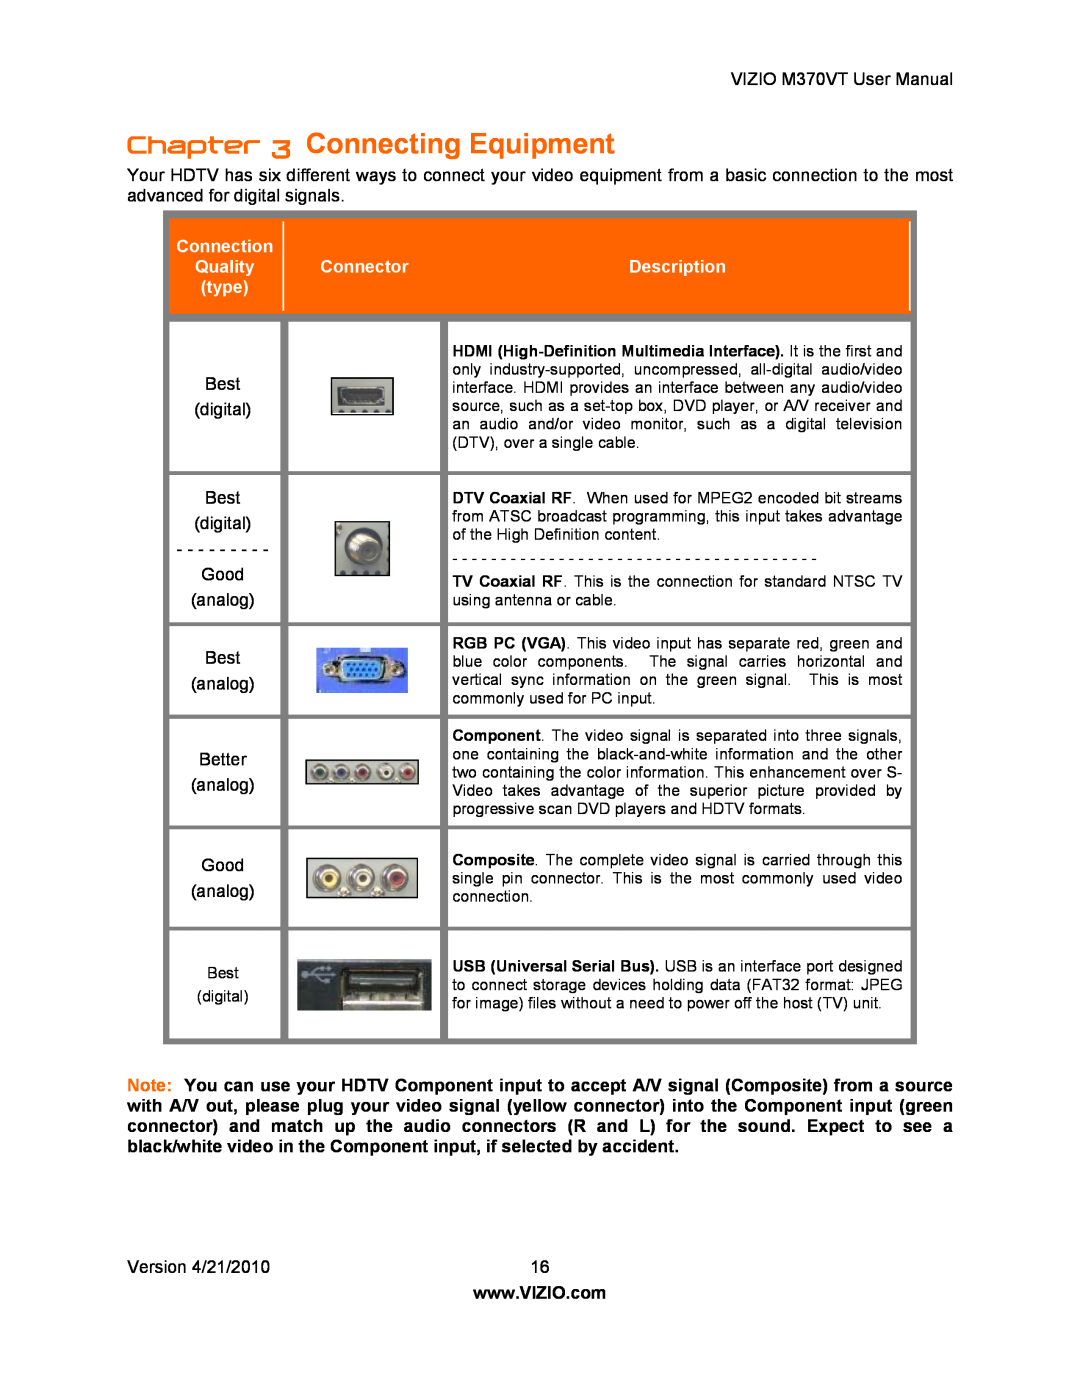 Vizio M370VT manual Connecting Equipment, Connection, Quality, Connector, Description, type 